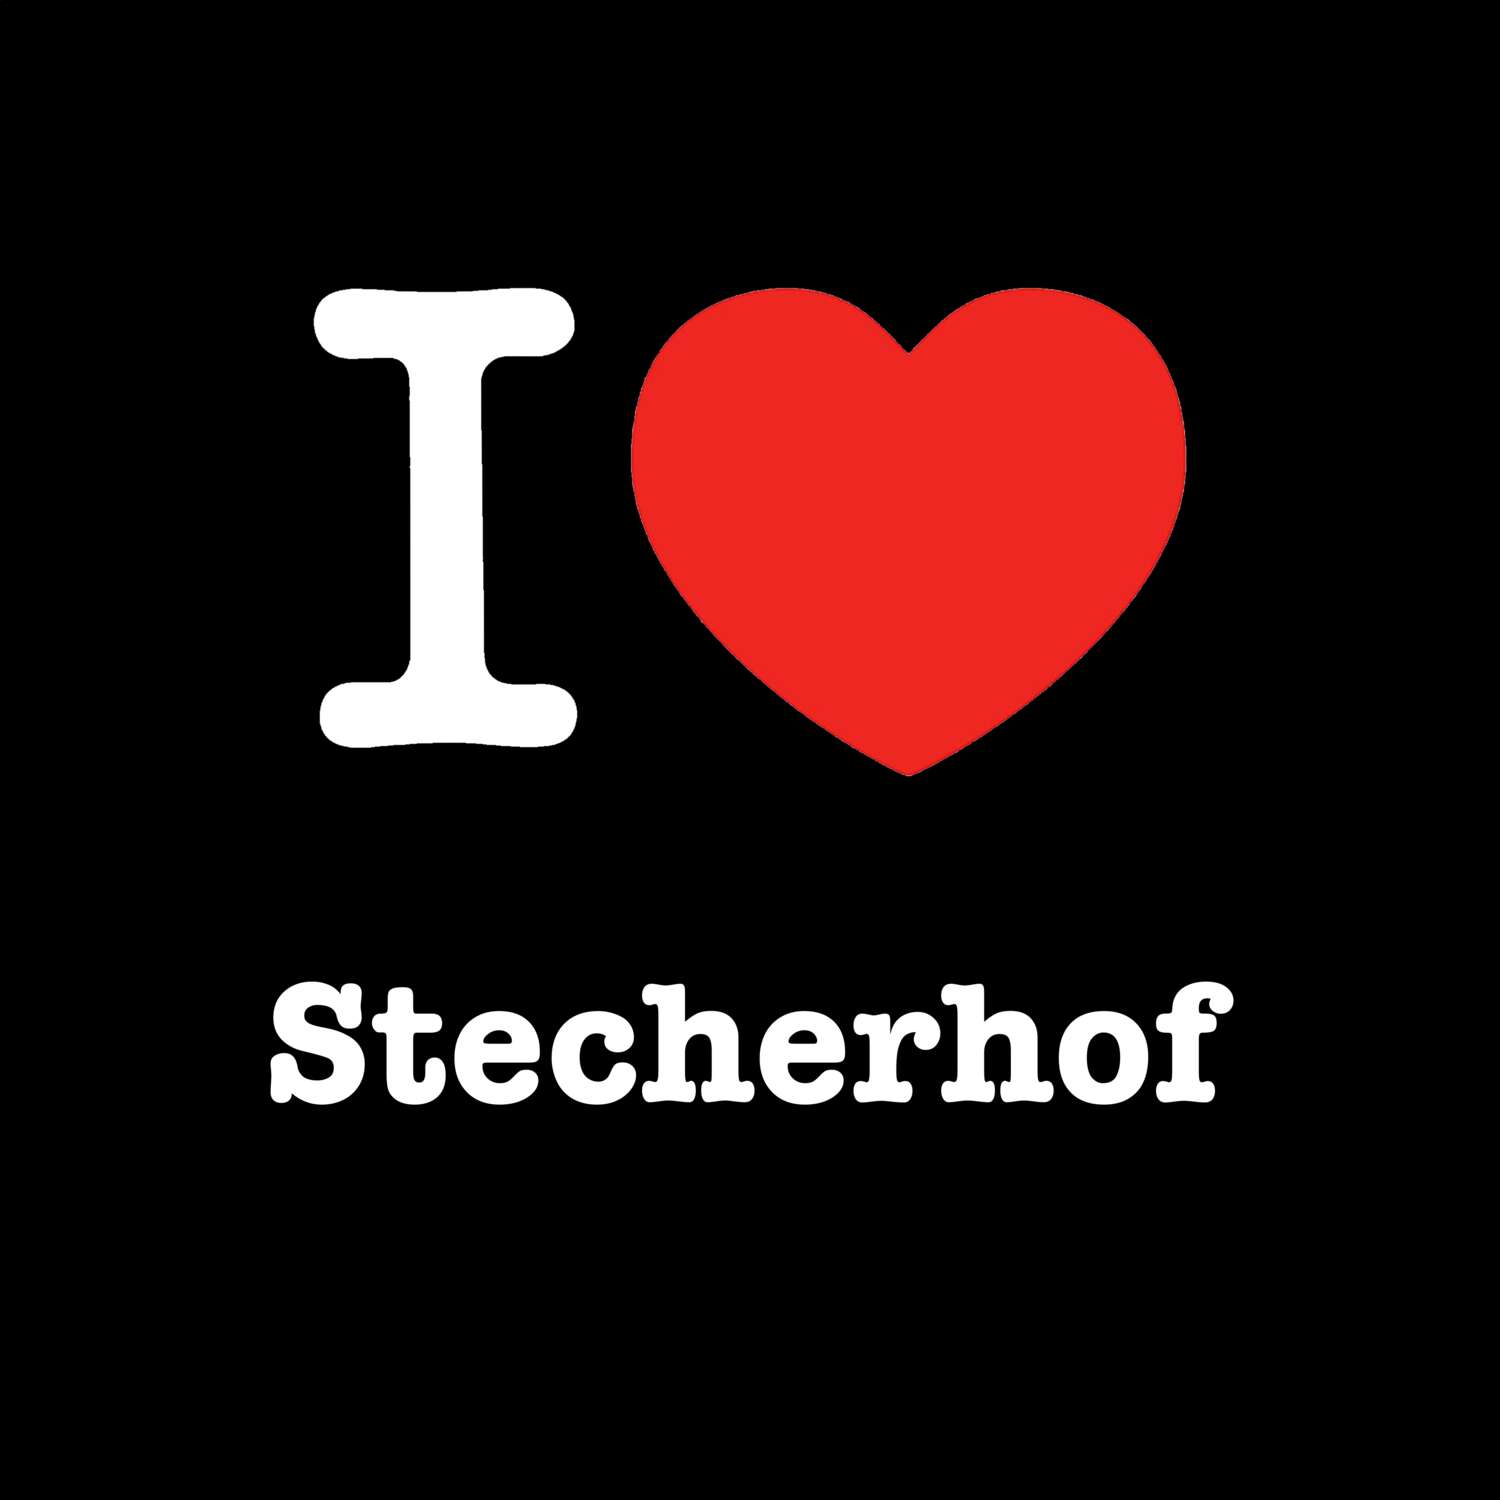 Stecherhof T-Shirt »I love«